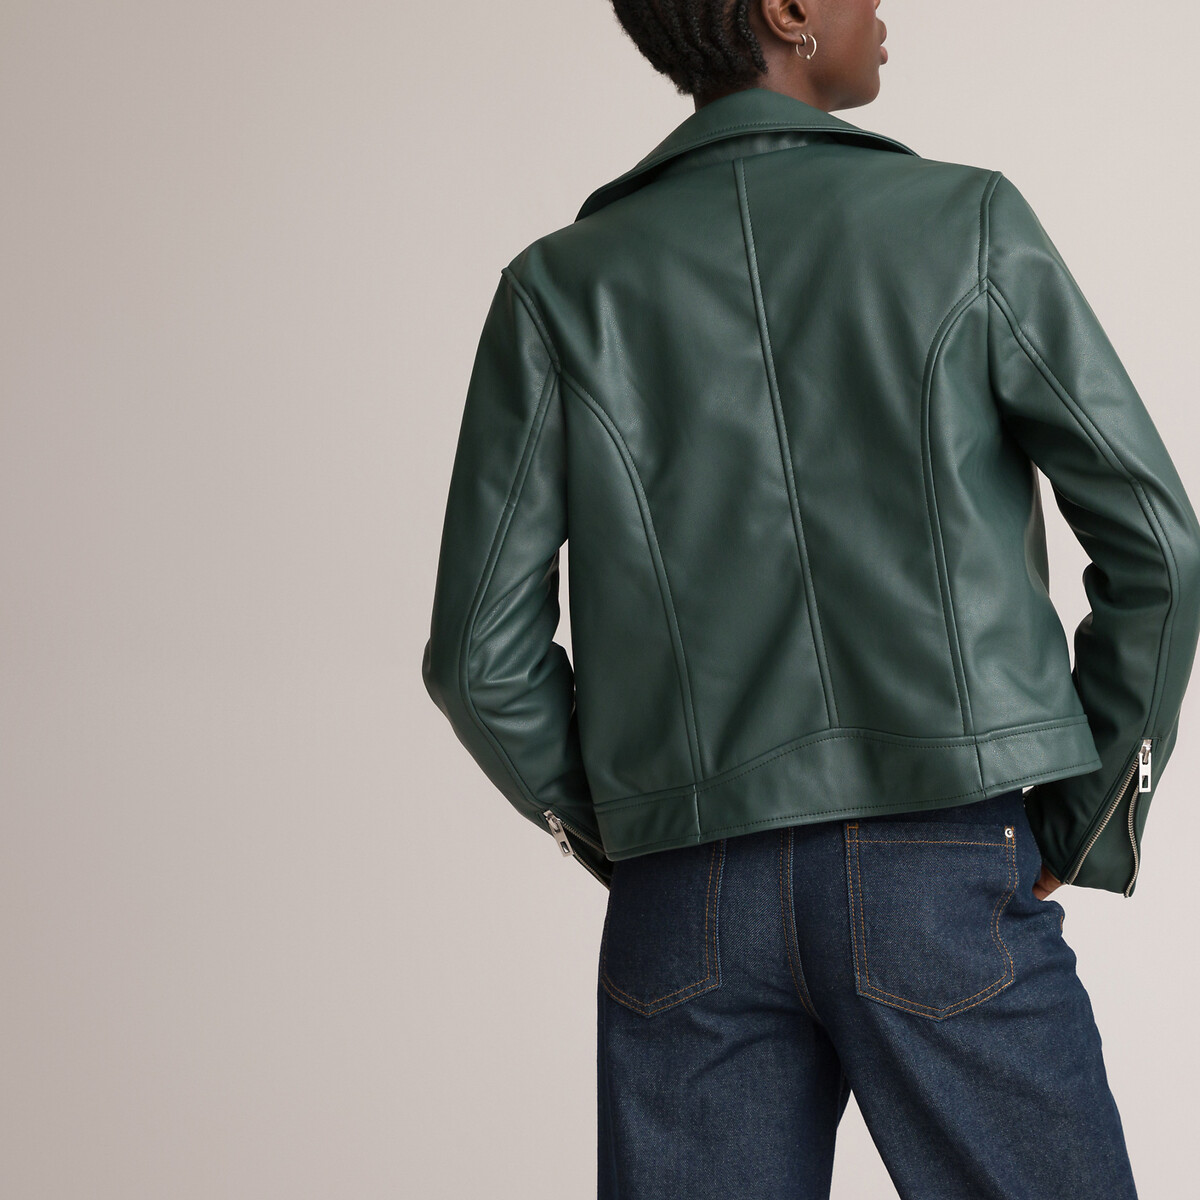 Куртка LA REDOUTE COLLECTIONS Куртка Короткая из искусственной кожи 38 (FR) - 44 (RUS) зеленый, размер 38 (FR) - 44 (RUS) Куртка Короткая из искусственной кожи 38 (FR) - 44 (RUS) зеленый - фото 4